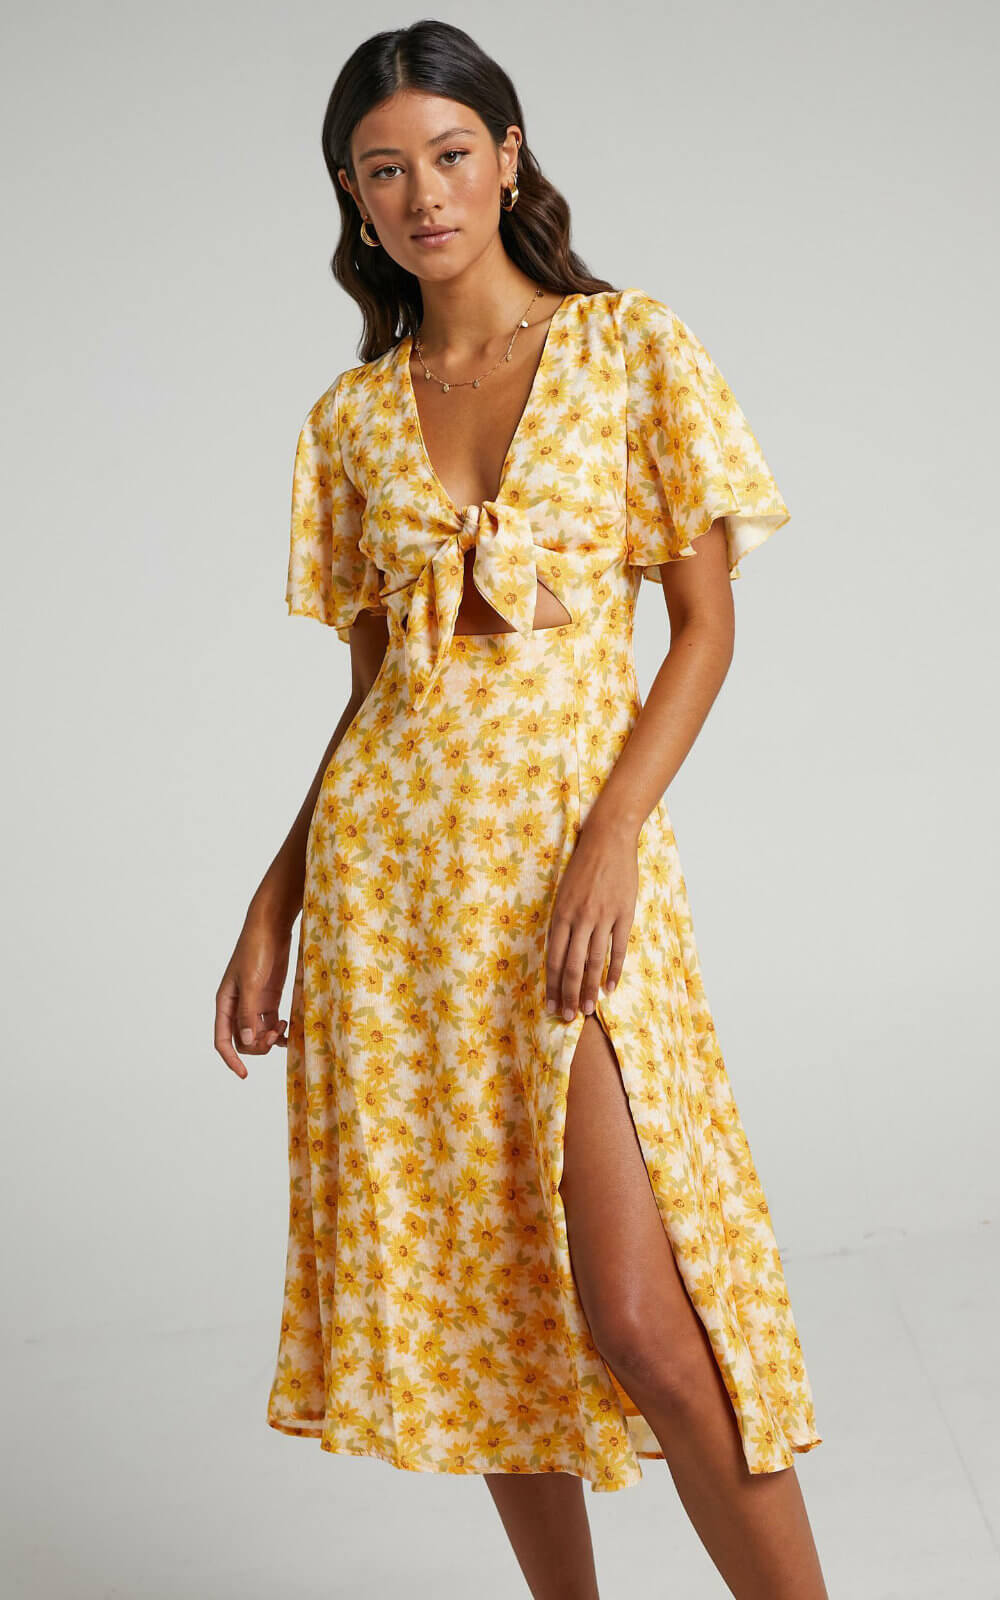 Positano Outfits Amalfi Coast Outfits Sunflower Dress